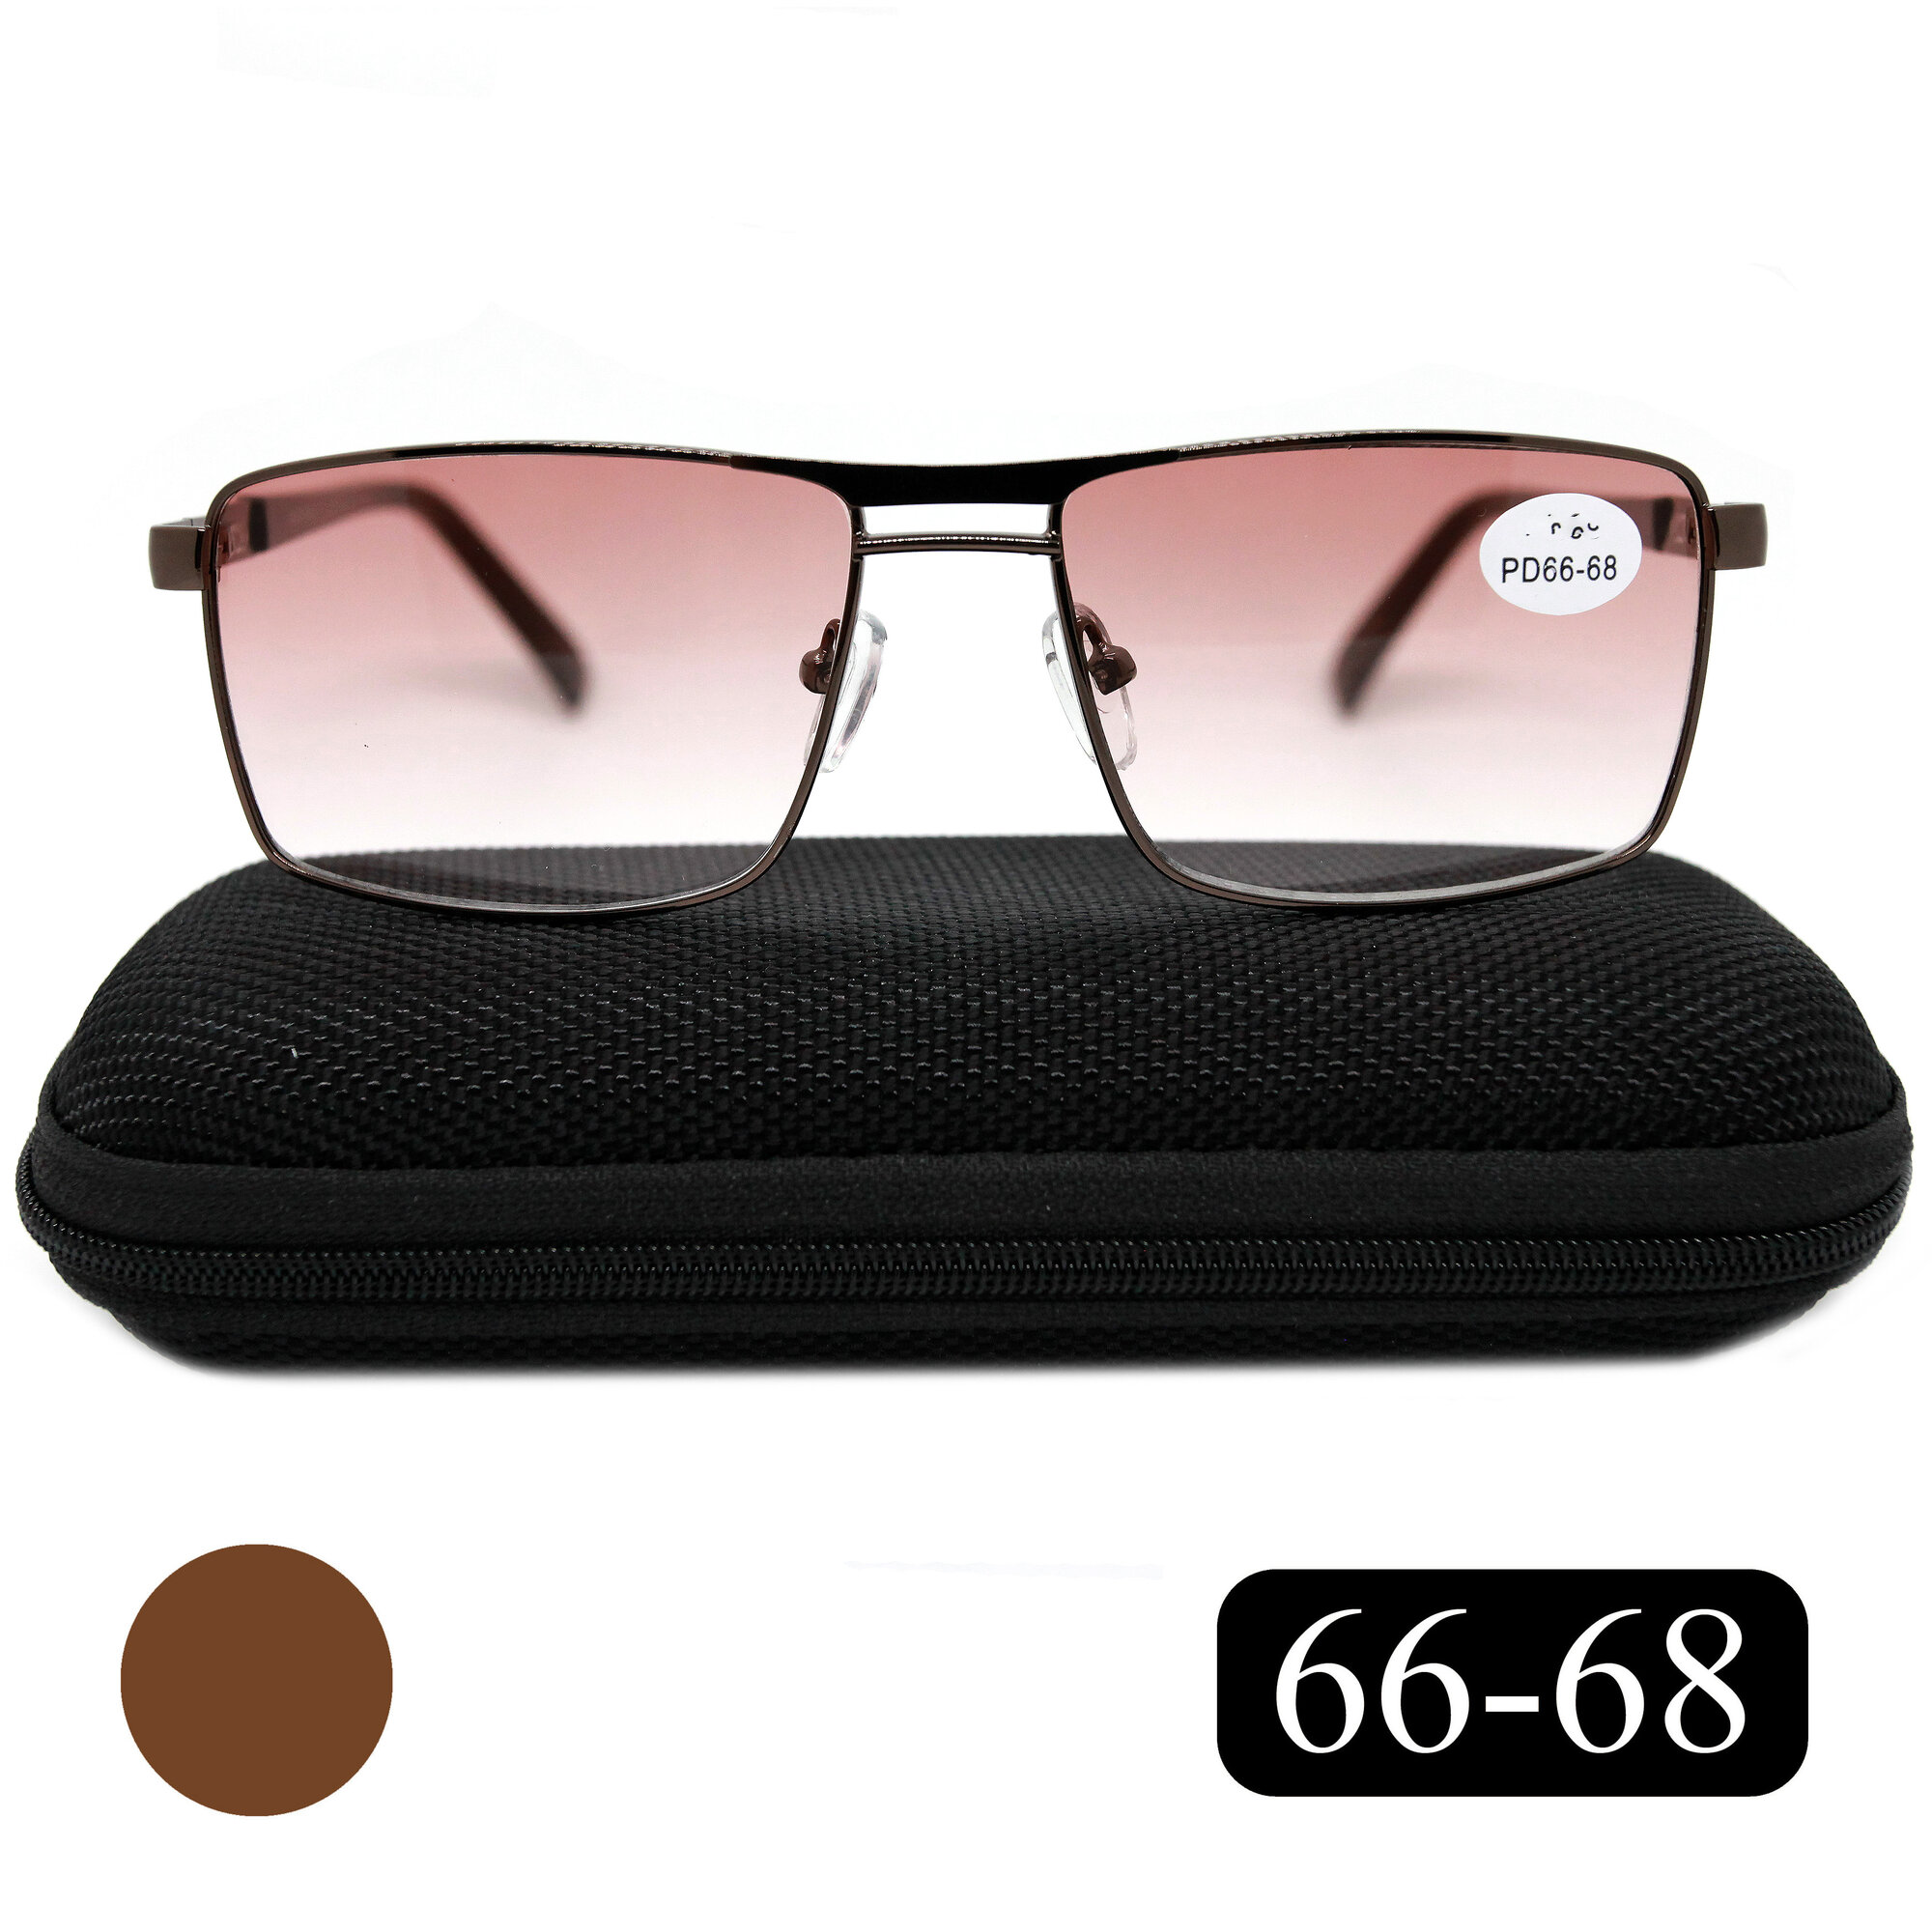 Готовые очки 66-68 для чтения с тонировкой (+4.00) SALIVIO 5009 С2, цвет коричневый, с футляром, РЦ 66-68